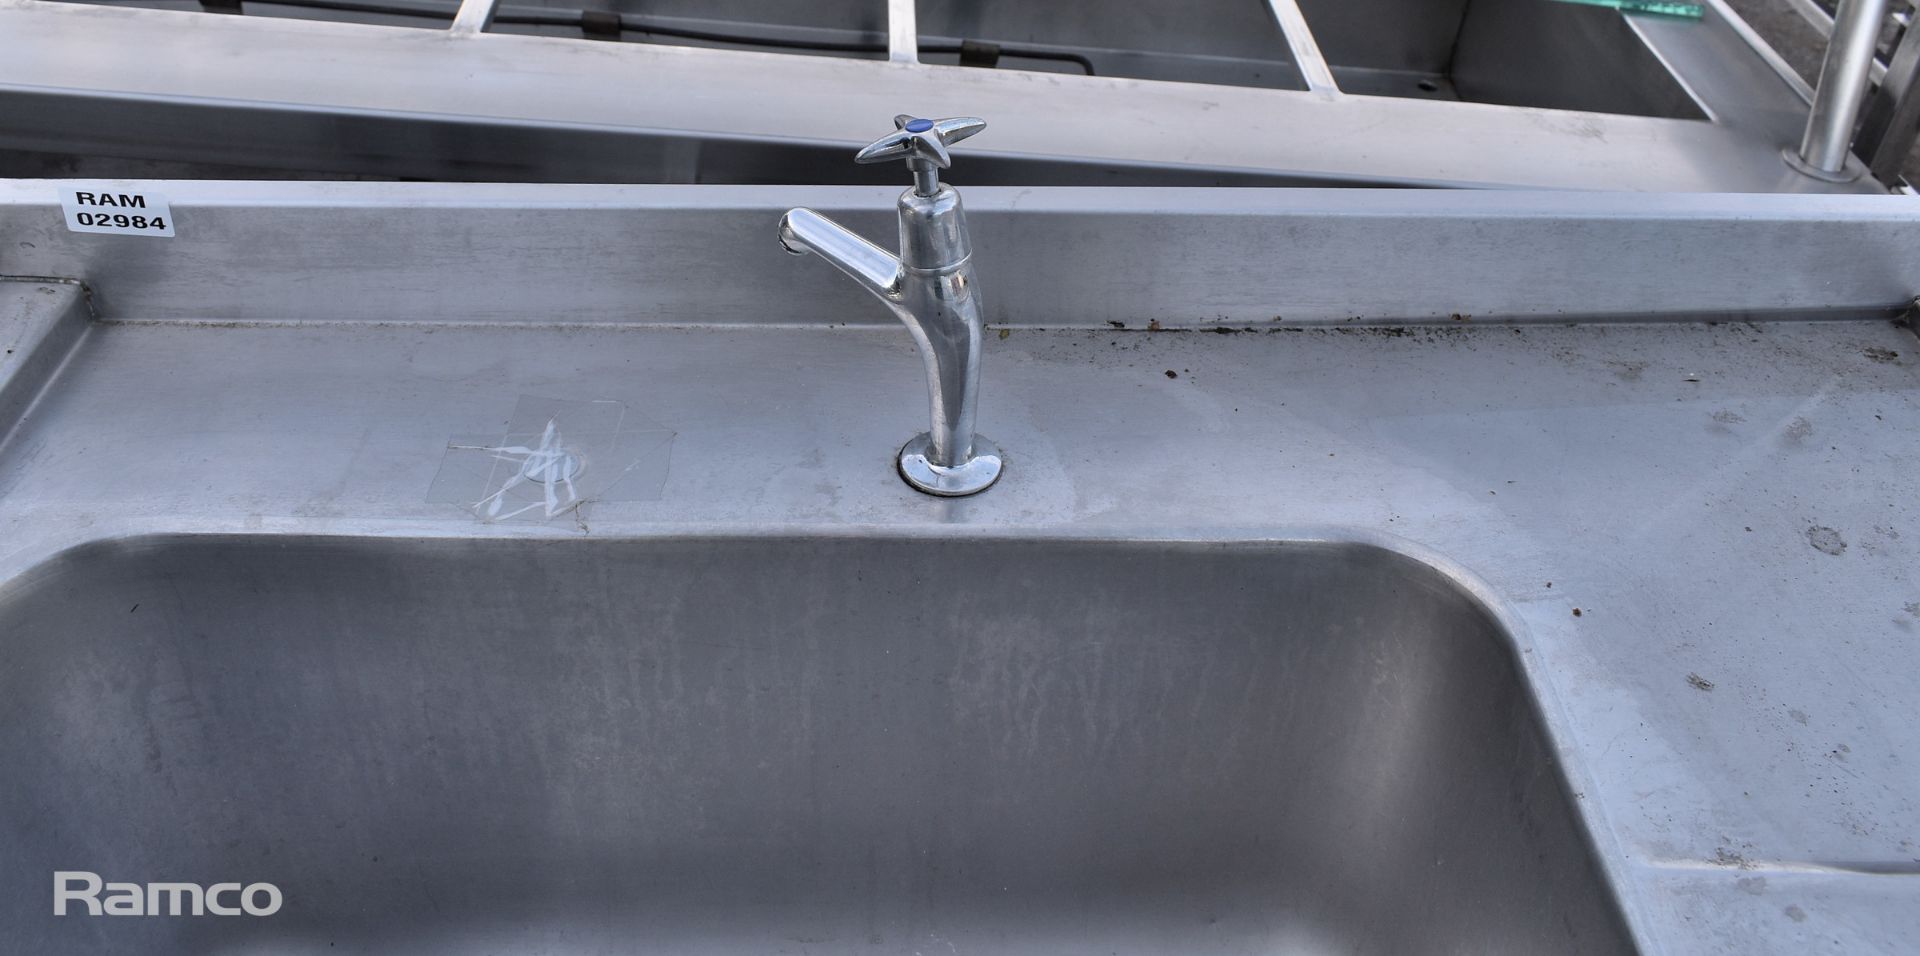 Stainless steel single sink bowl table with single bottom shelf - L 100 x W 70 x H 98cm - Bild 3 aus 5